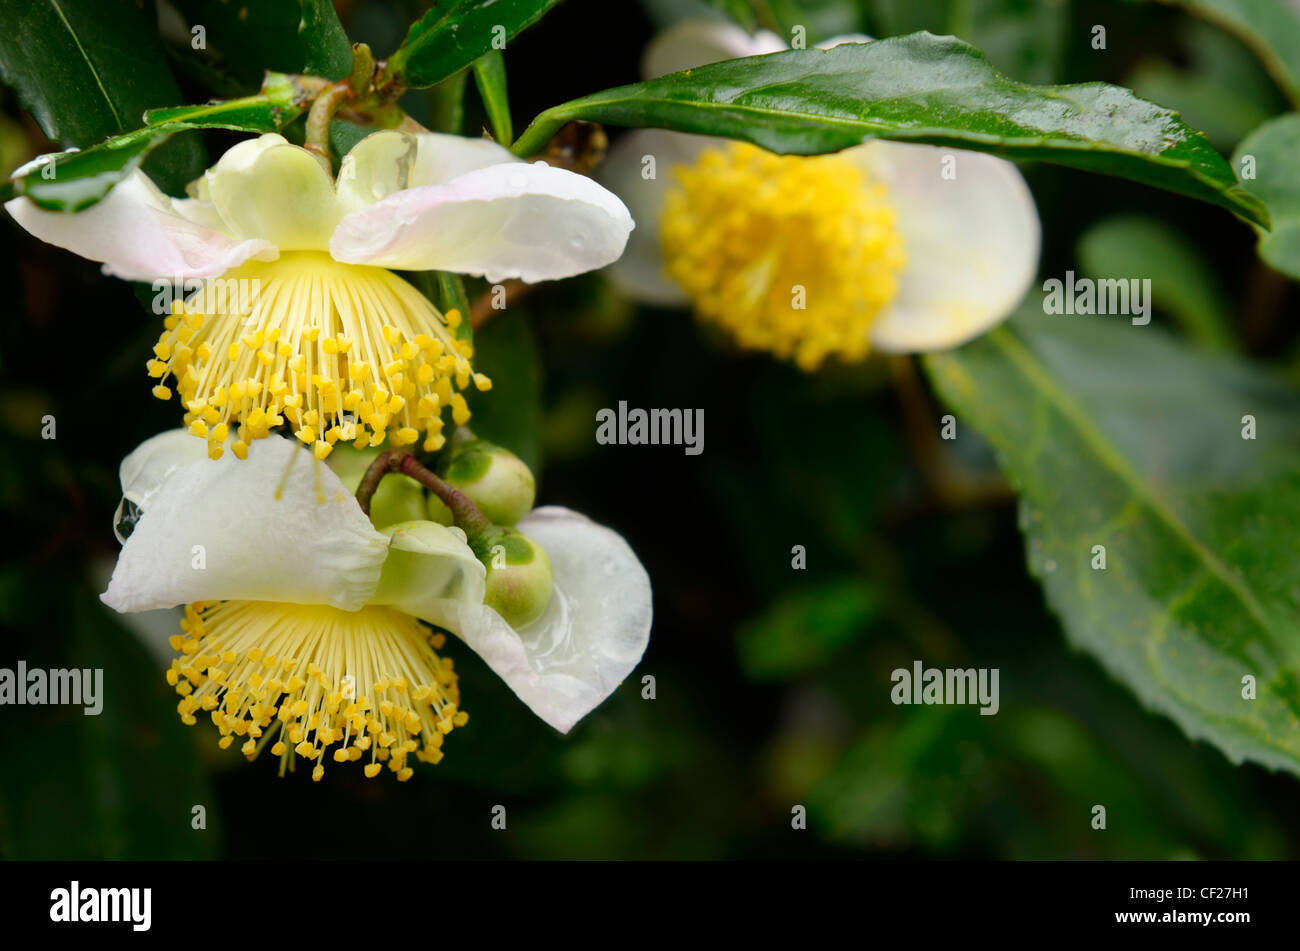 Close up of wet tea bush flowers in Long Jing area of Hangzhou China Stock Photo